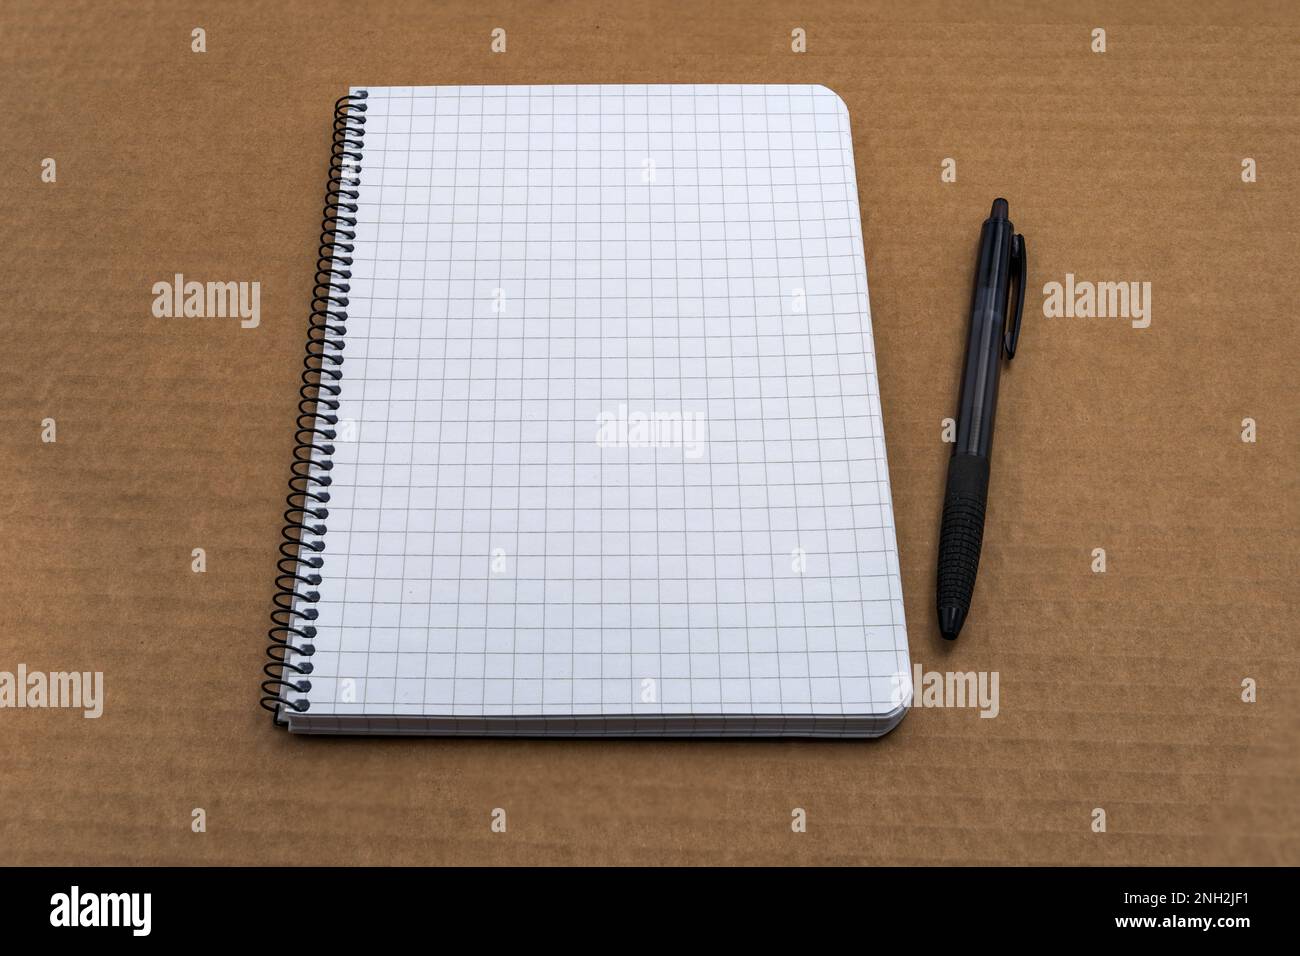 Kariertes Notizbuch mit Papierspirale und schwarzem Kugelschreiber auf braunem Karton Stockfoto